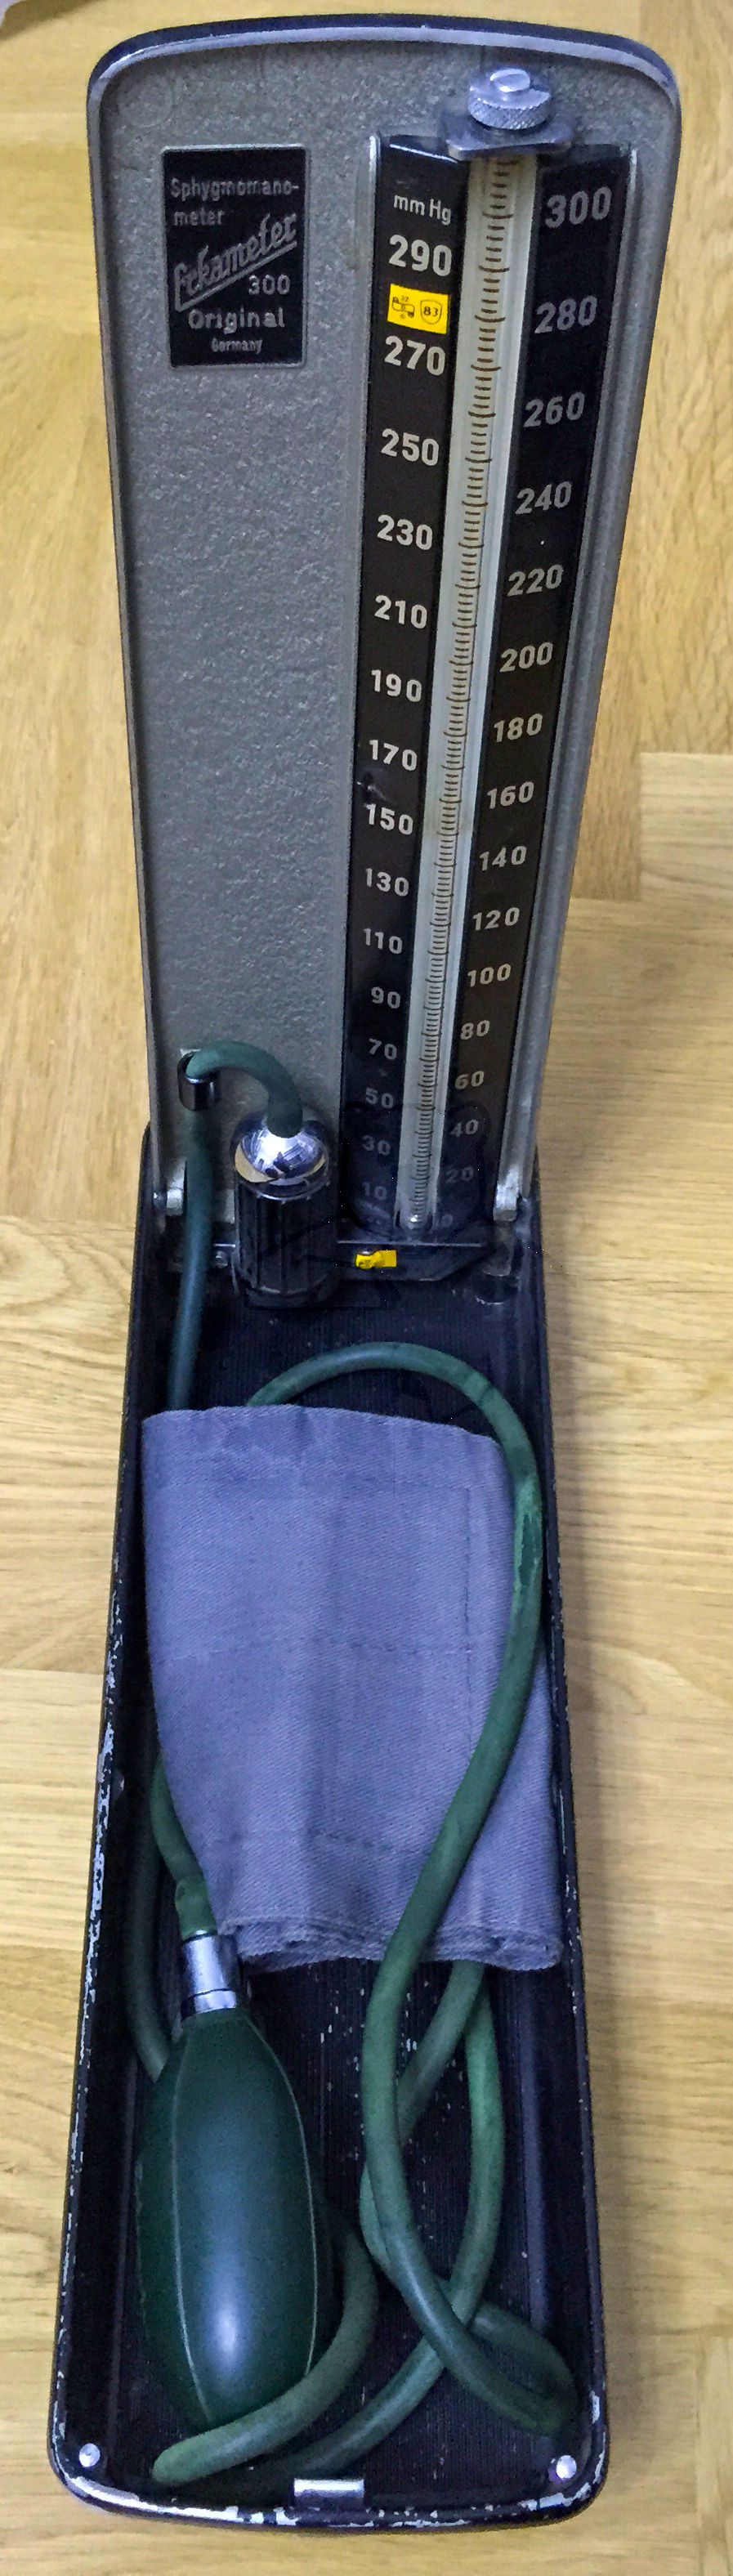 Erka 300 Blutdruckmesser (Sphygmomanometer), Originalzustand, 1960'er Jahre, Ansicht von schräg oben